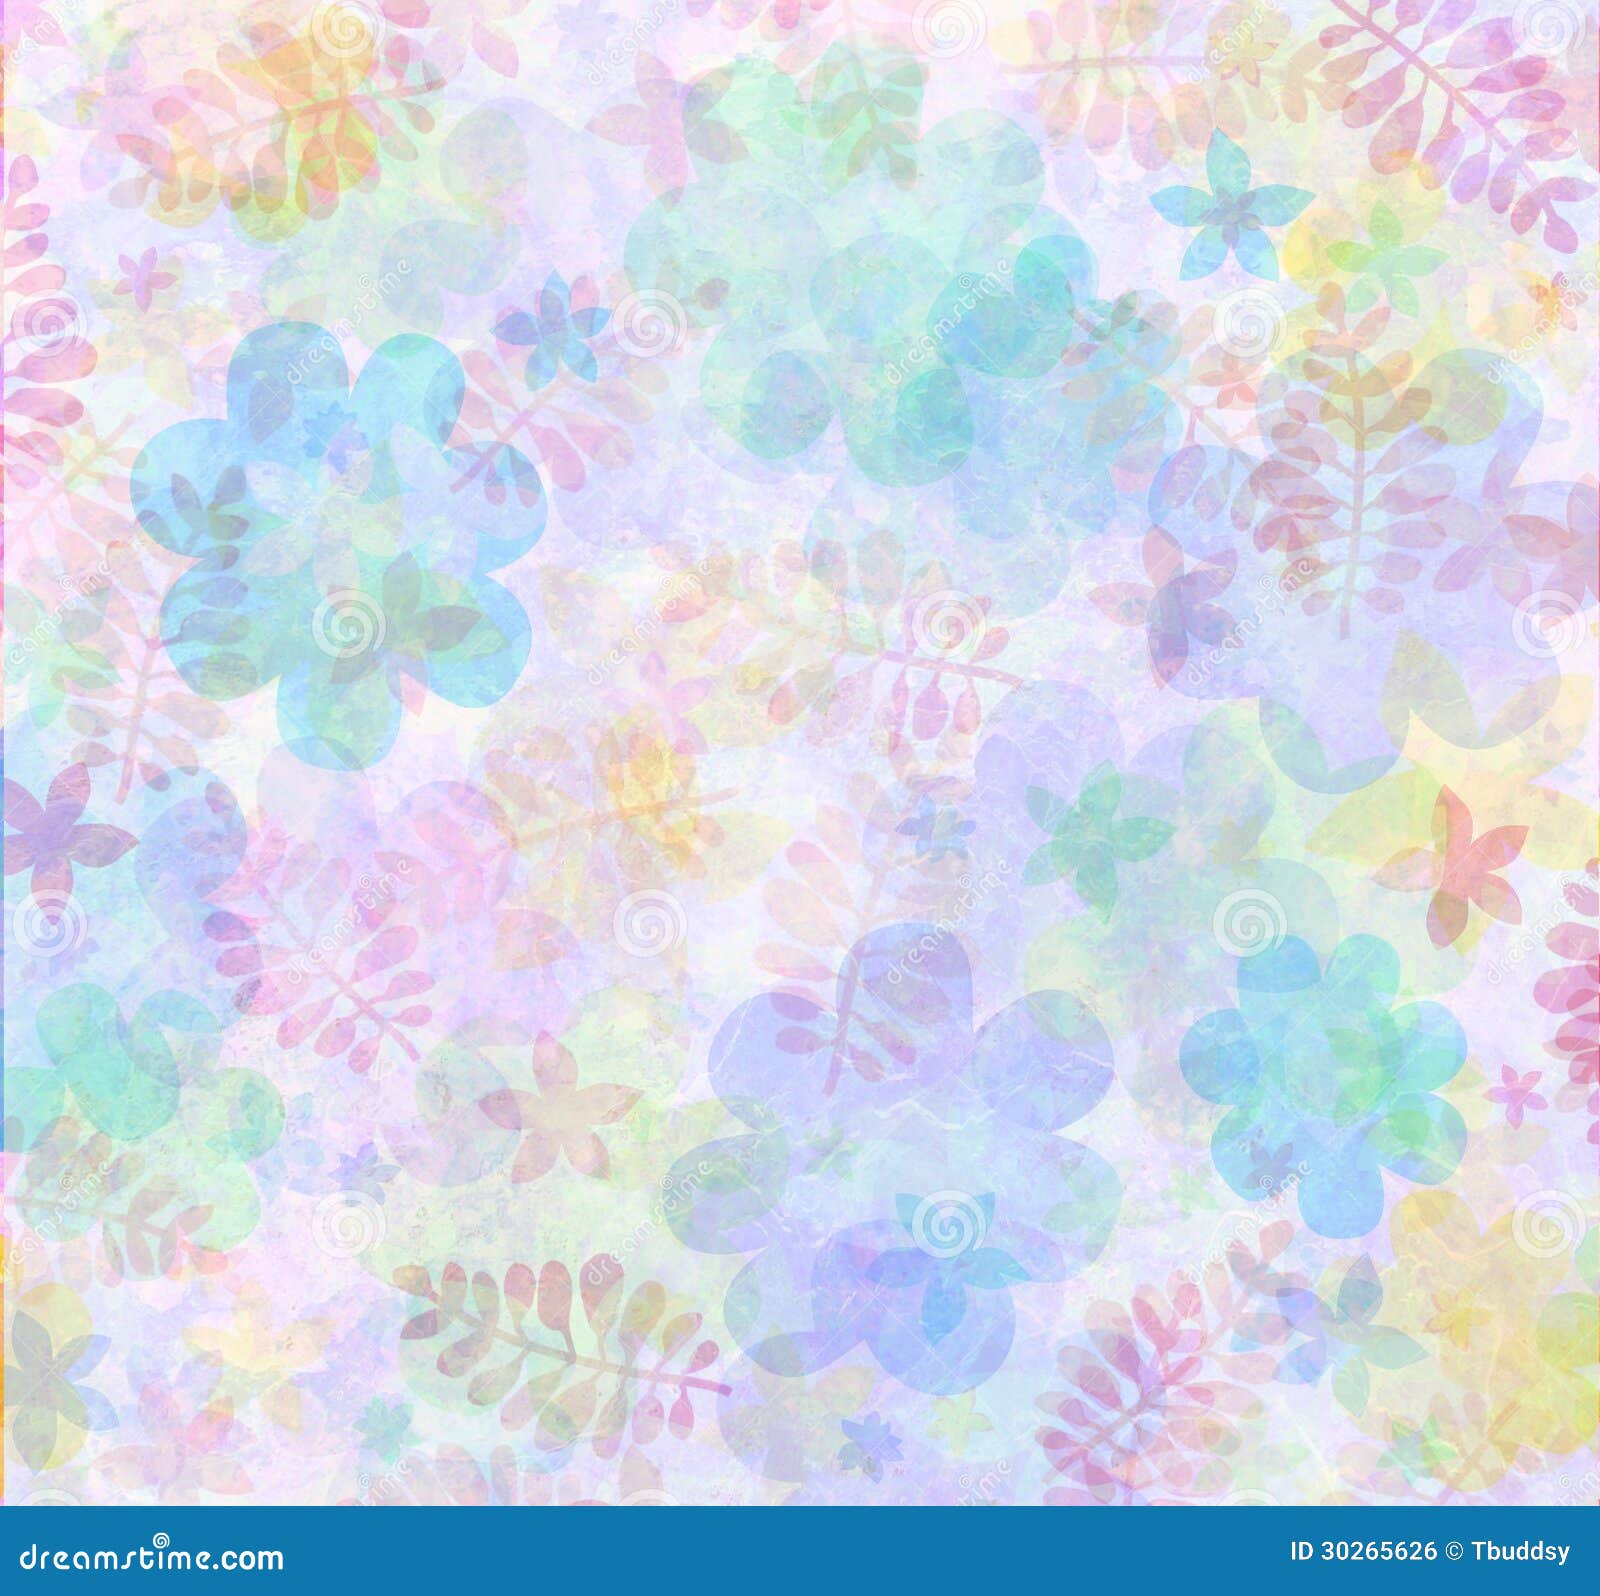 Pastel floral background stock illustration. Illustration of banner -  30265626